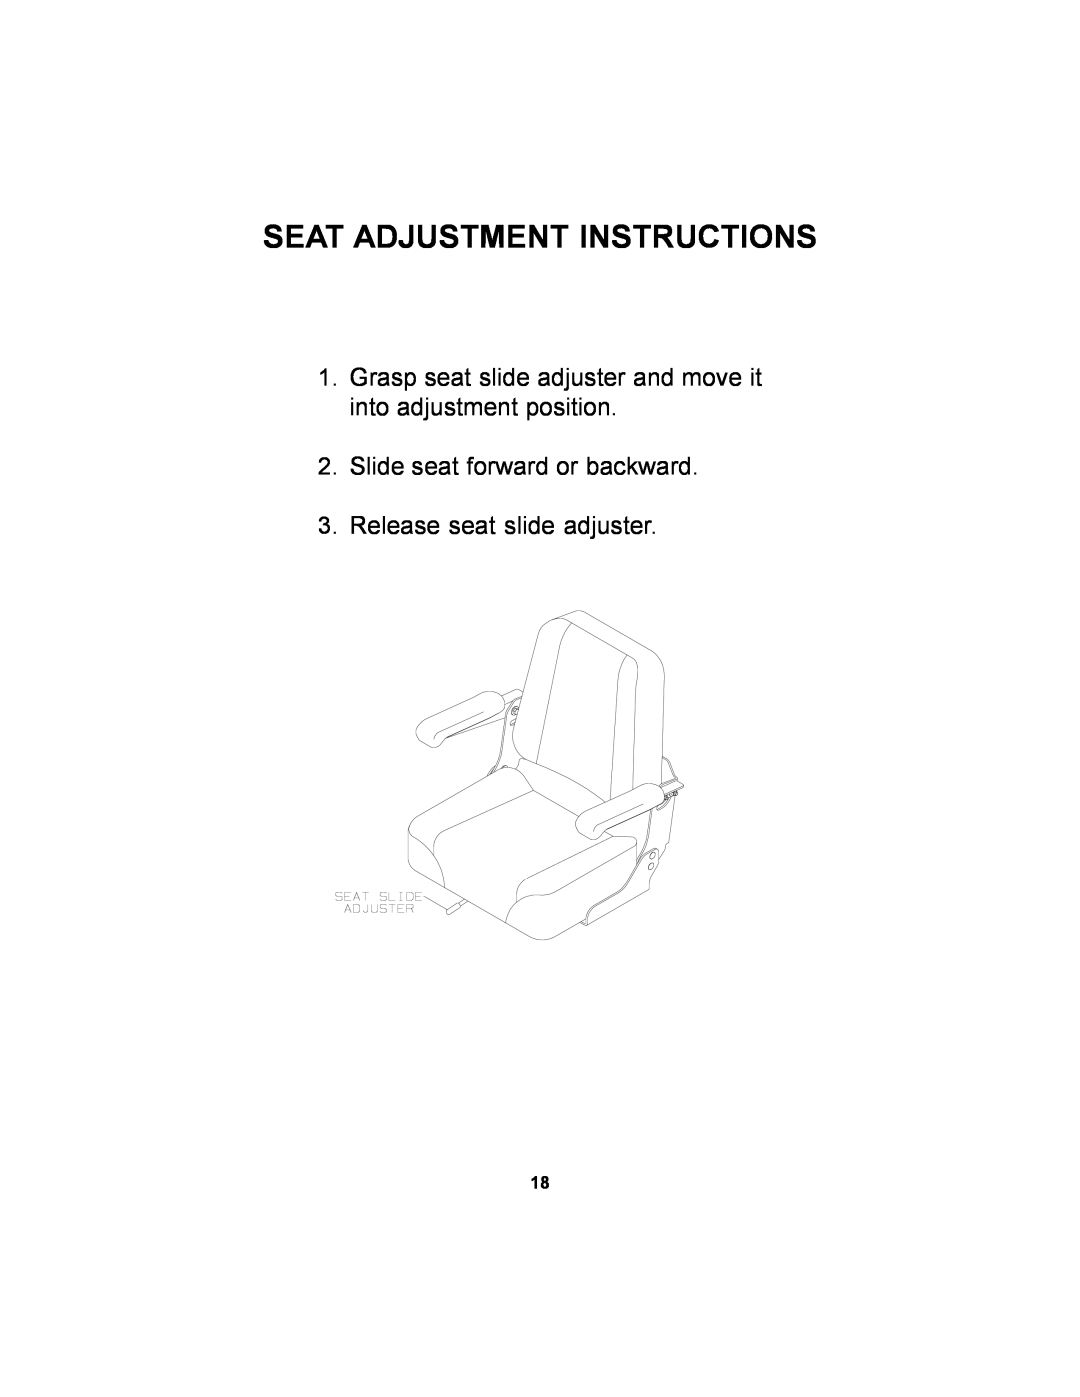 Dixon 11249-106 manual Seat Adjustment Instructions, Slide seat forward or backward, Release seat slide adjuster 